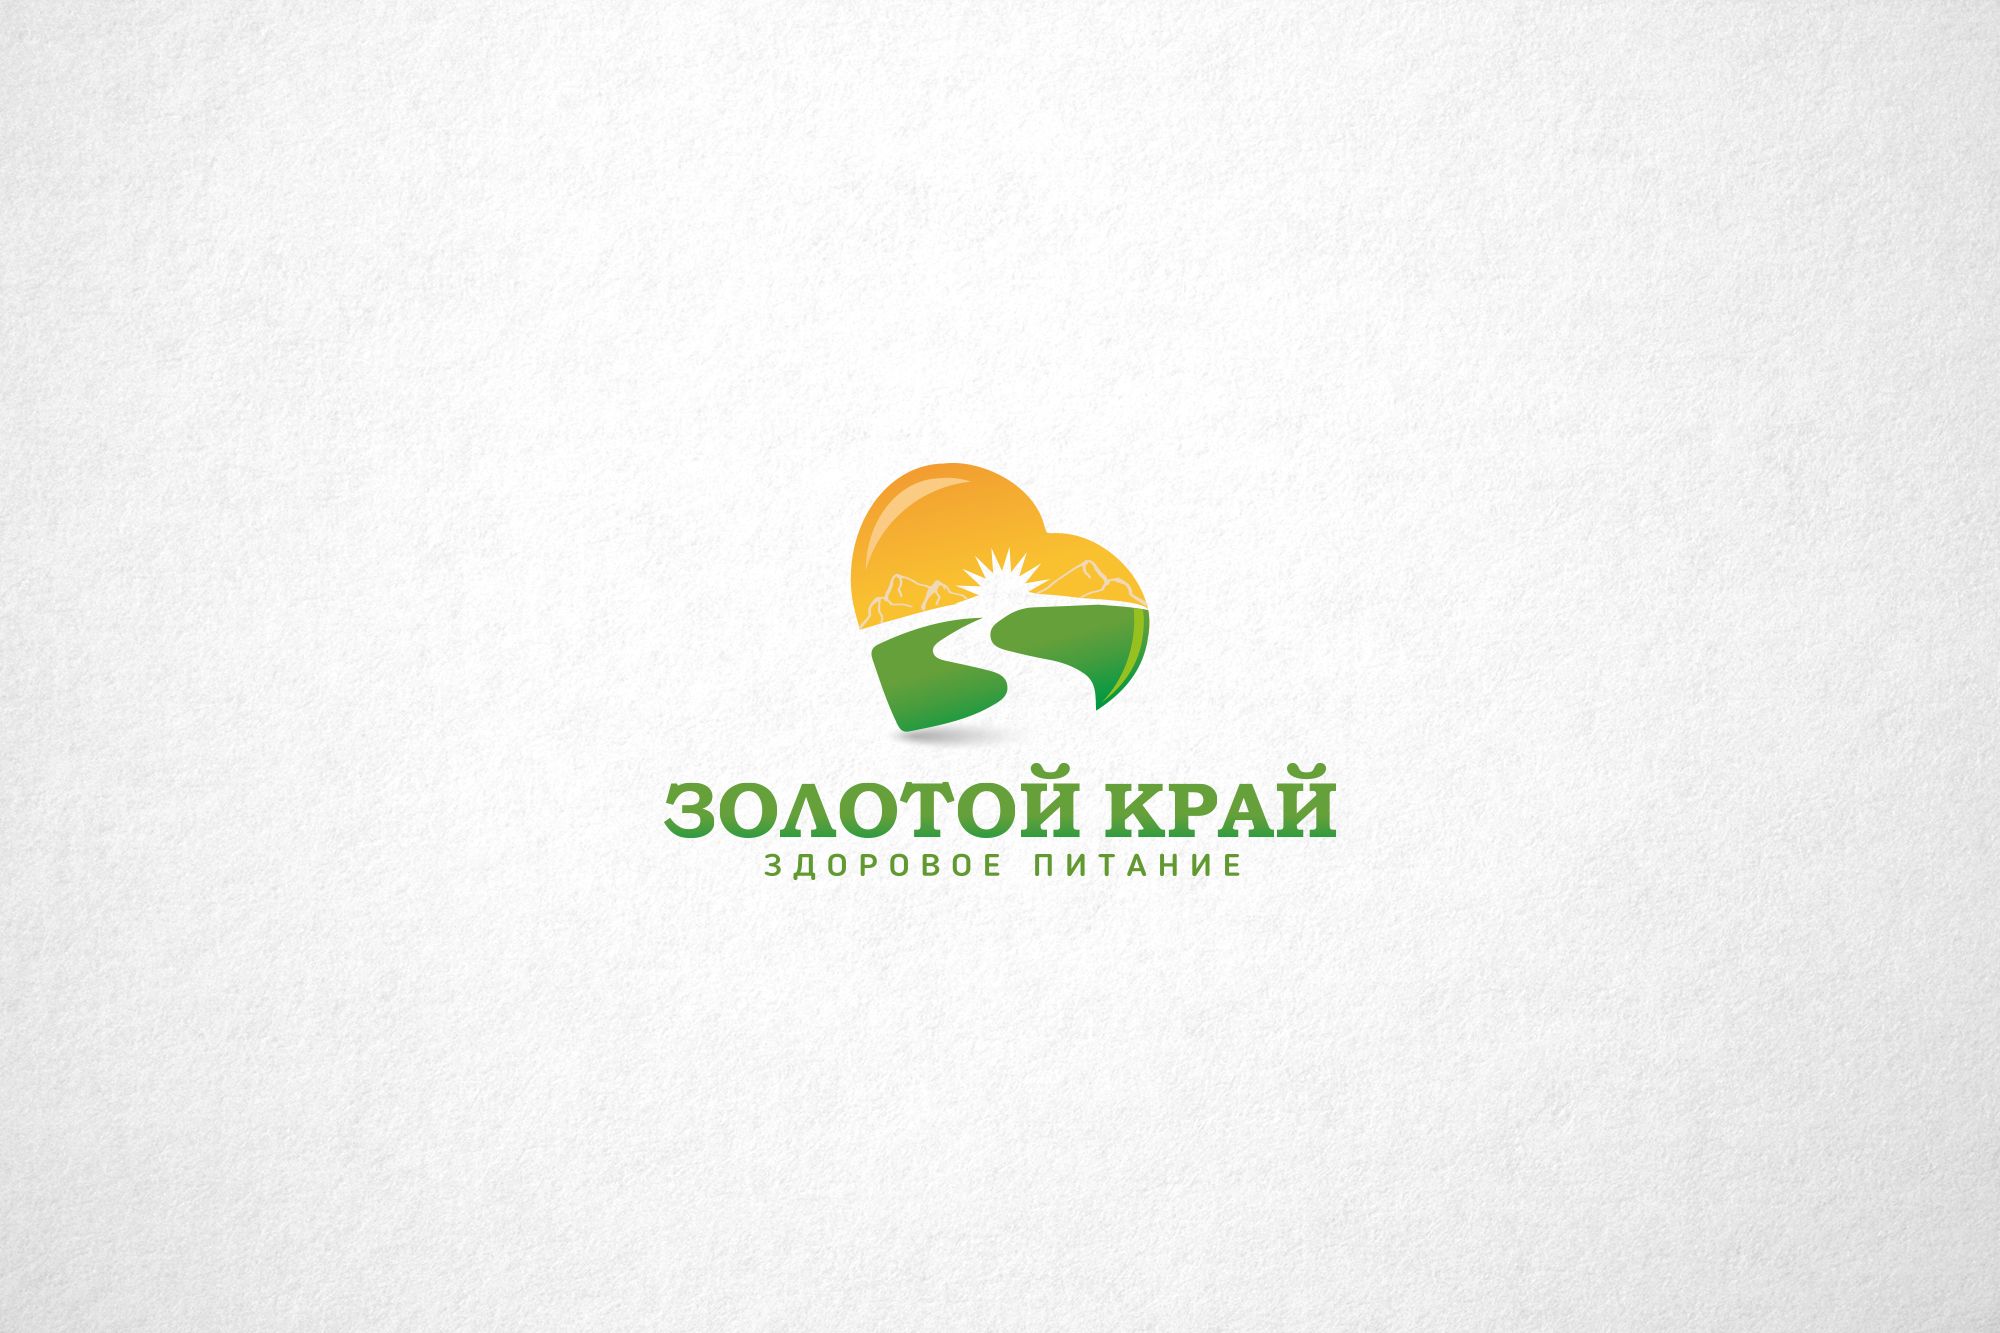 Логотип для магазина натуральных продуктов - дизайнер funkielevis